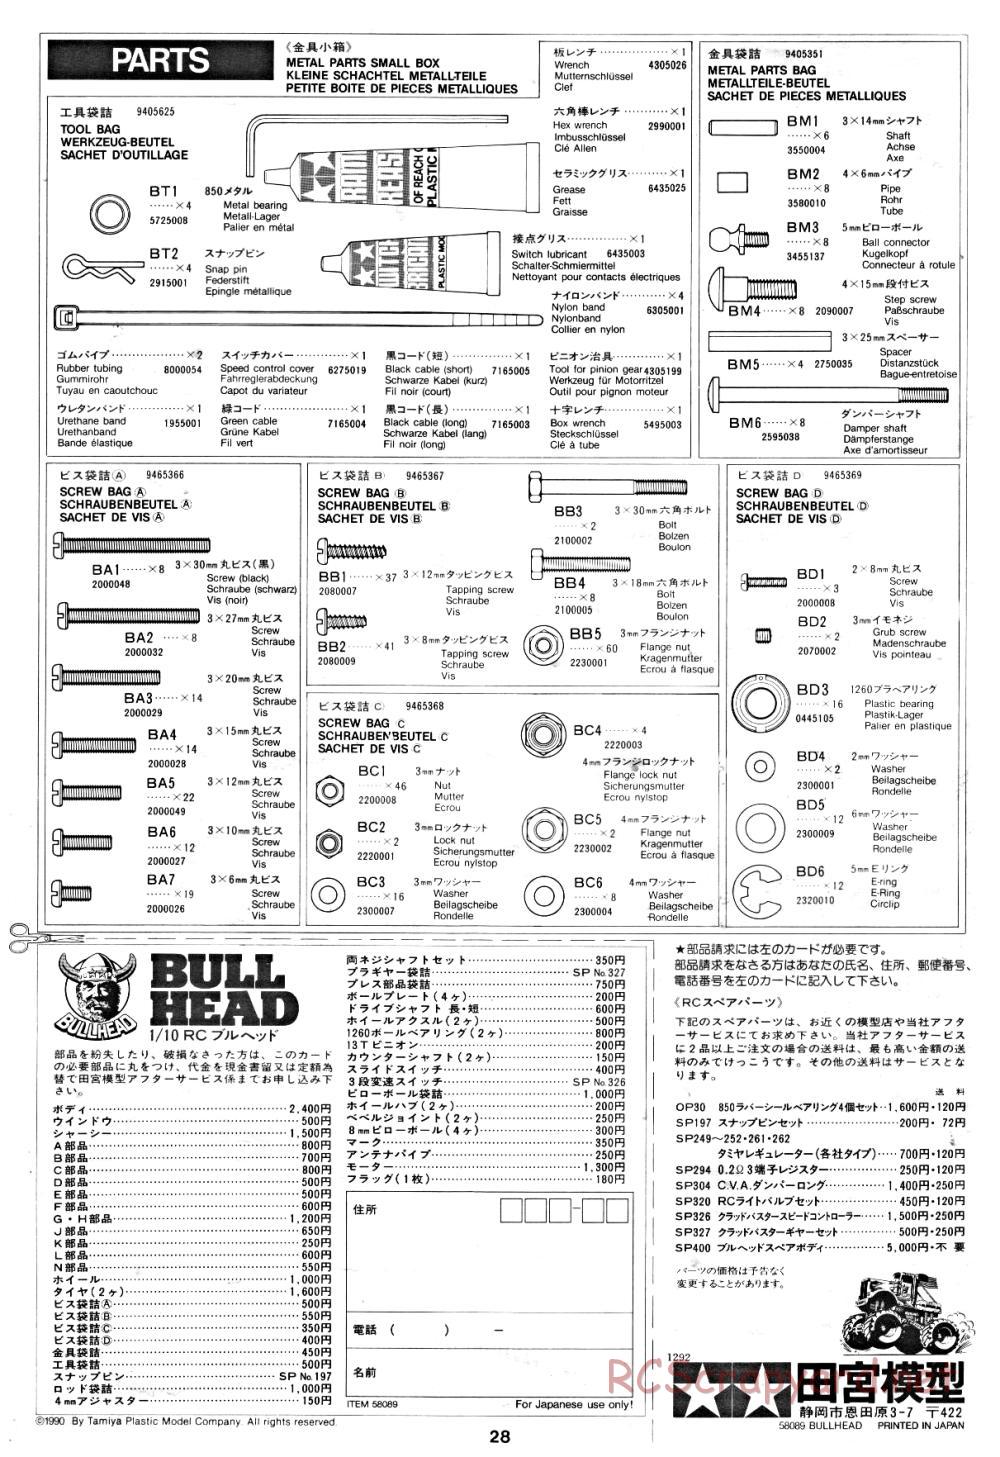 Tamiya - Bullhead - 58089 - Manual - Page 28